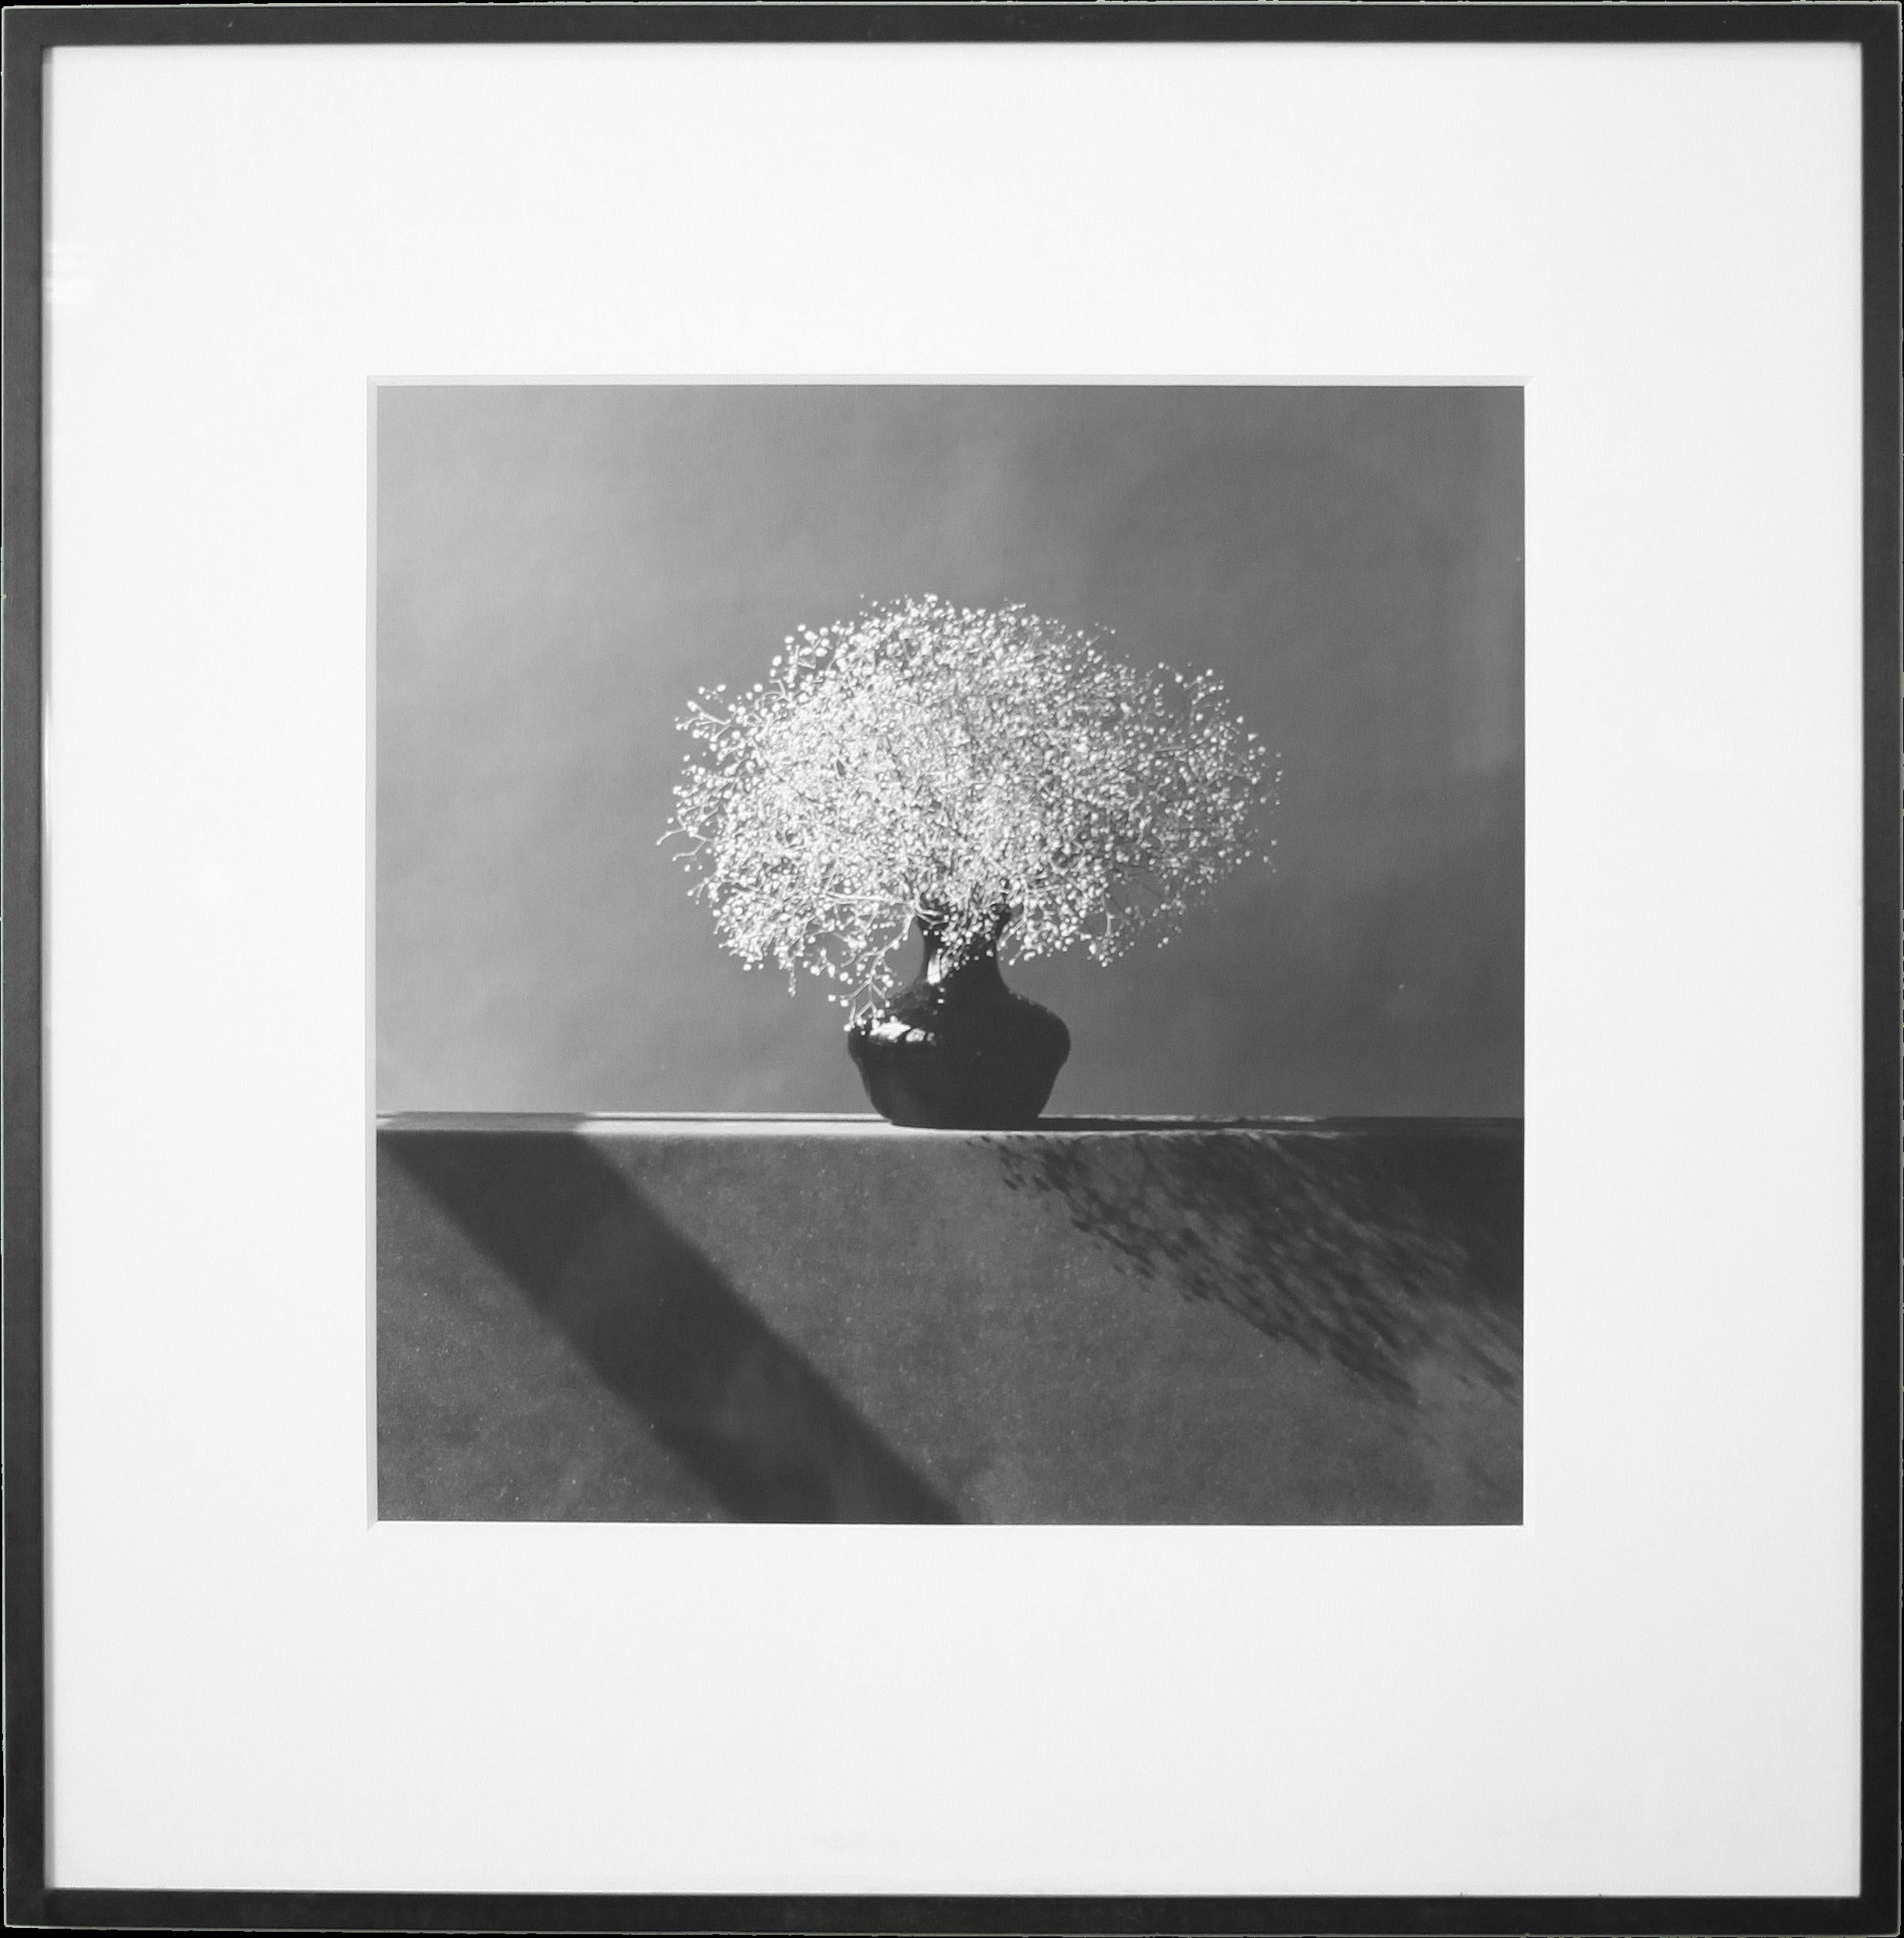 Robert Mapplethorpe est sans aucun doute un père fondateur de la photographie moderne. Grâce à ses images iconiques en noir et blanc, Mapplethorpe a gagné à la fois la reconnaissance et l'infamie avec son travail souvent controversé. Les thèmes de